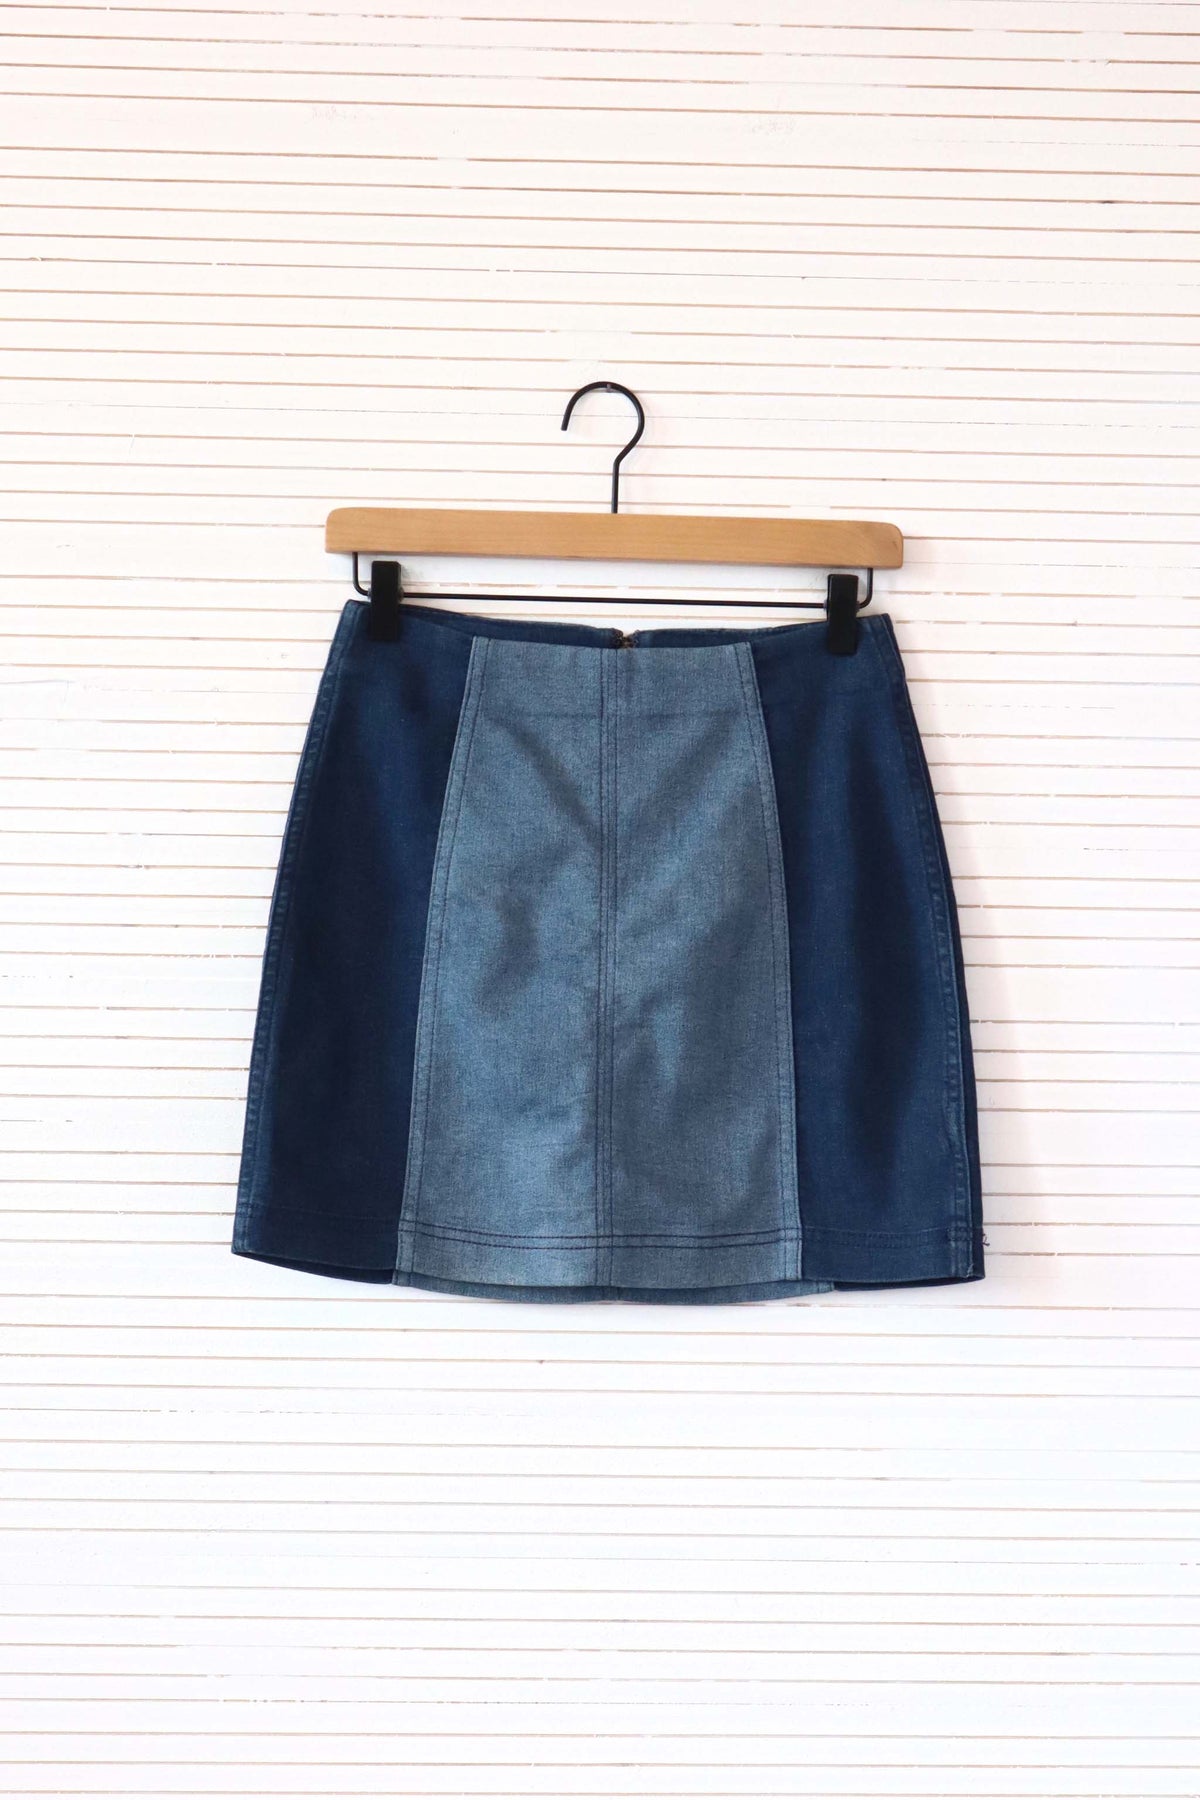 East Campus Mini Skirt